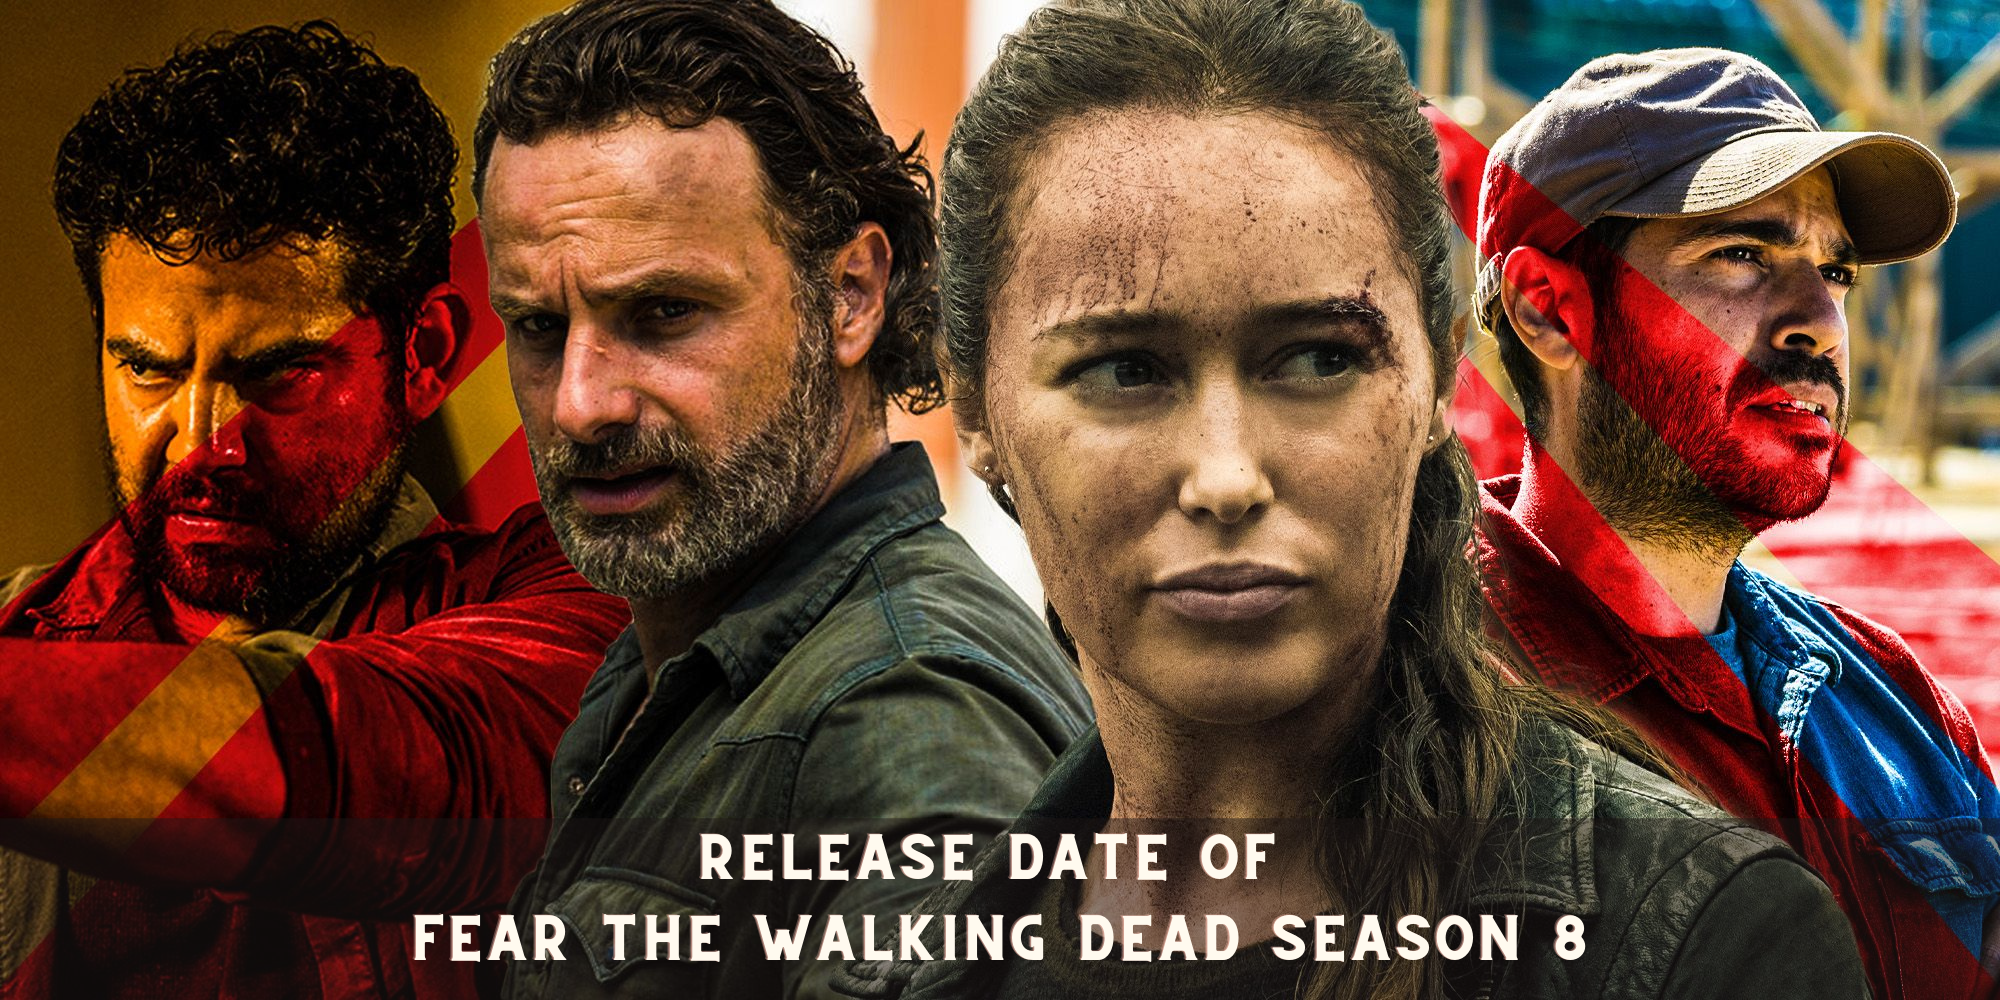 Release Date Of Fear The Walking Dead Season 8